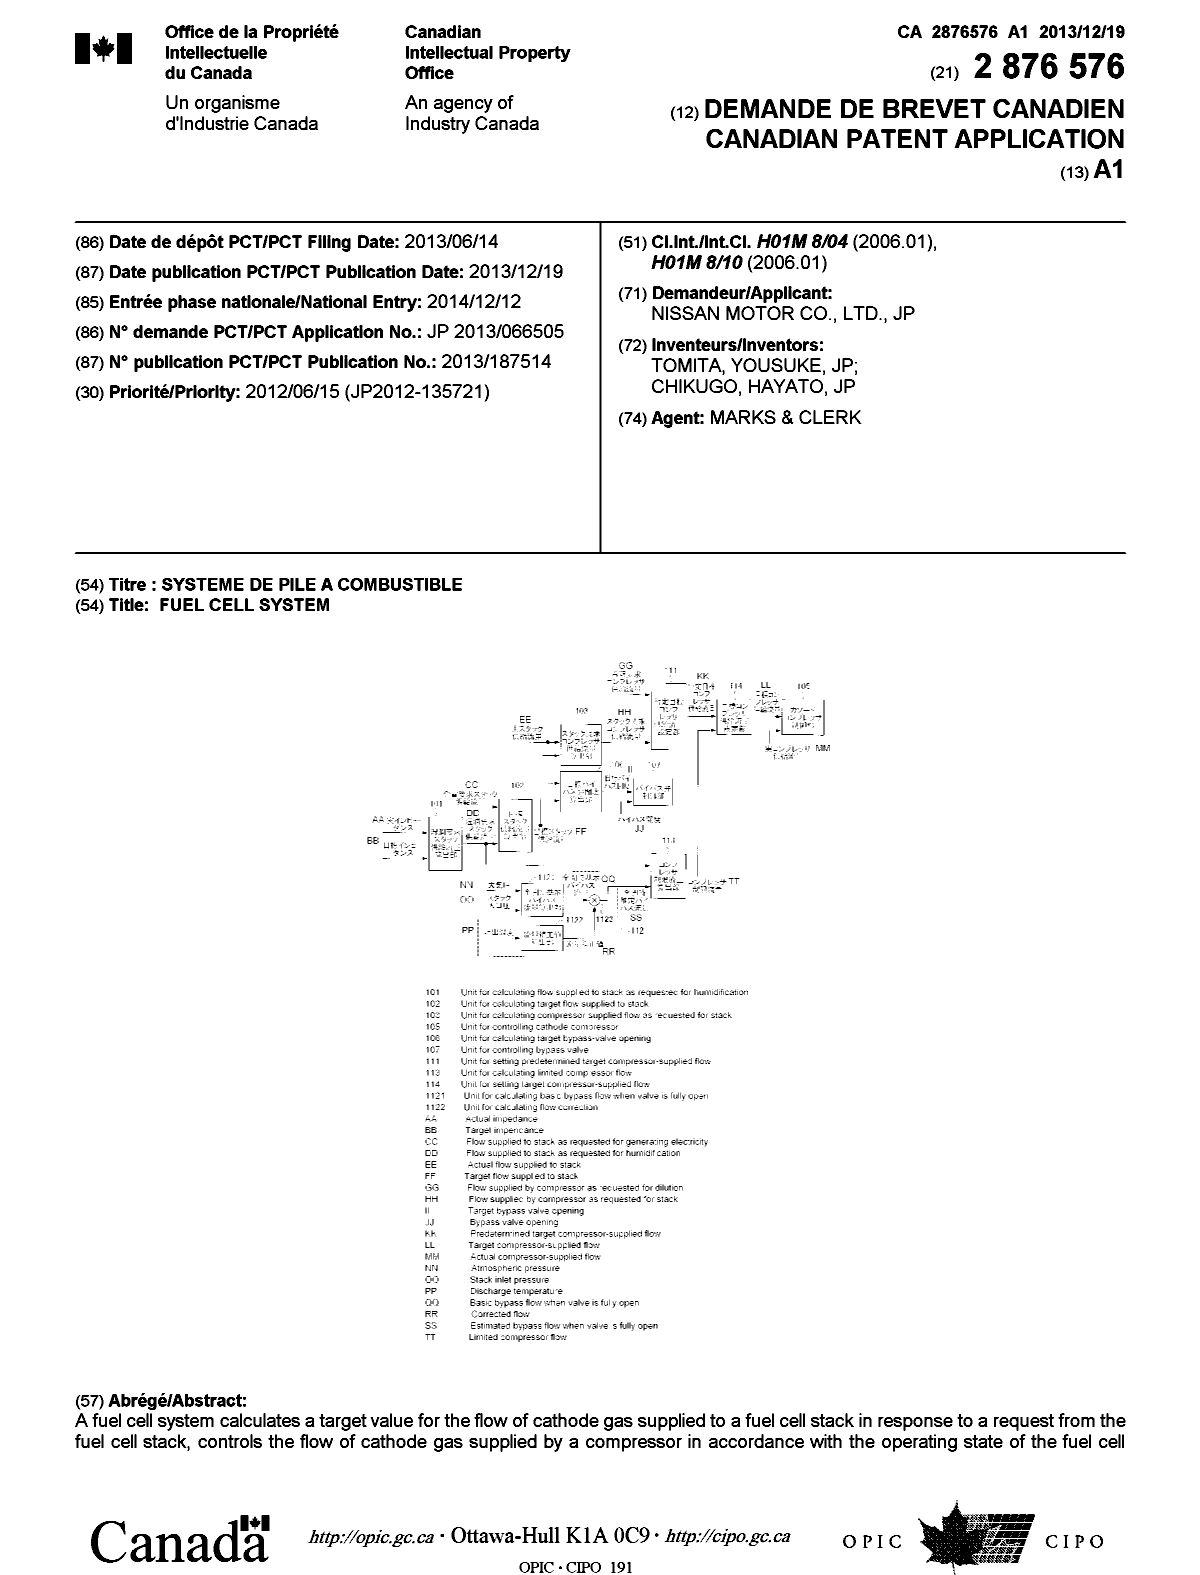 Document de brevet canadien 2876576. Page couverture 20150211. Image 1 de 2